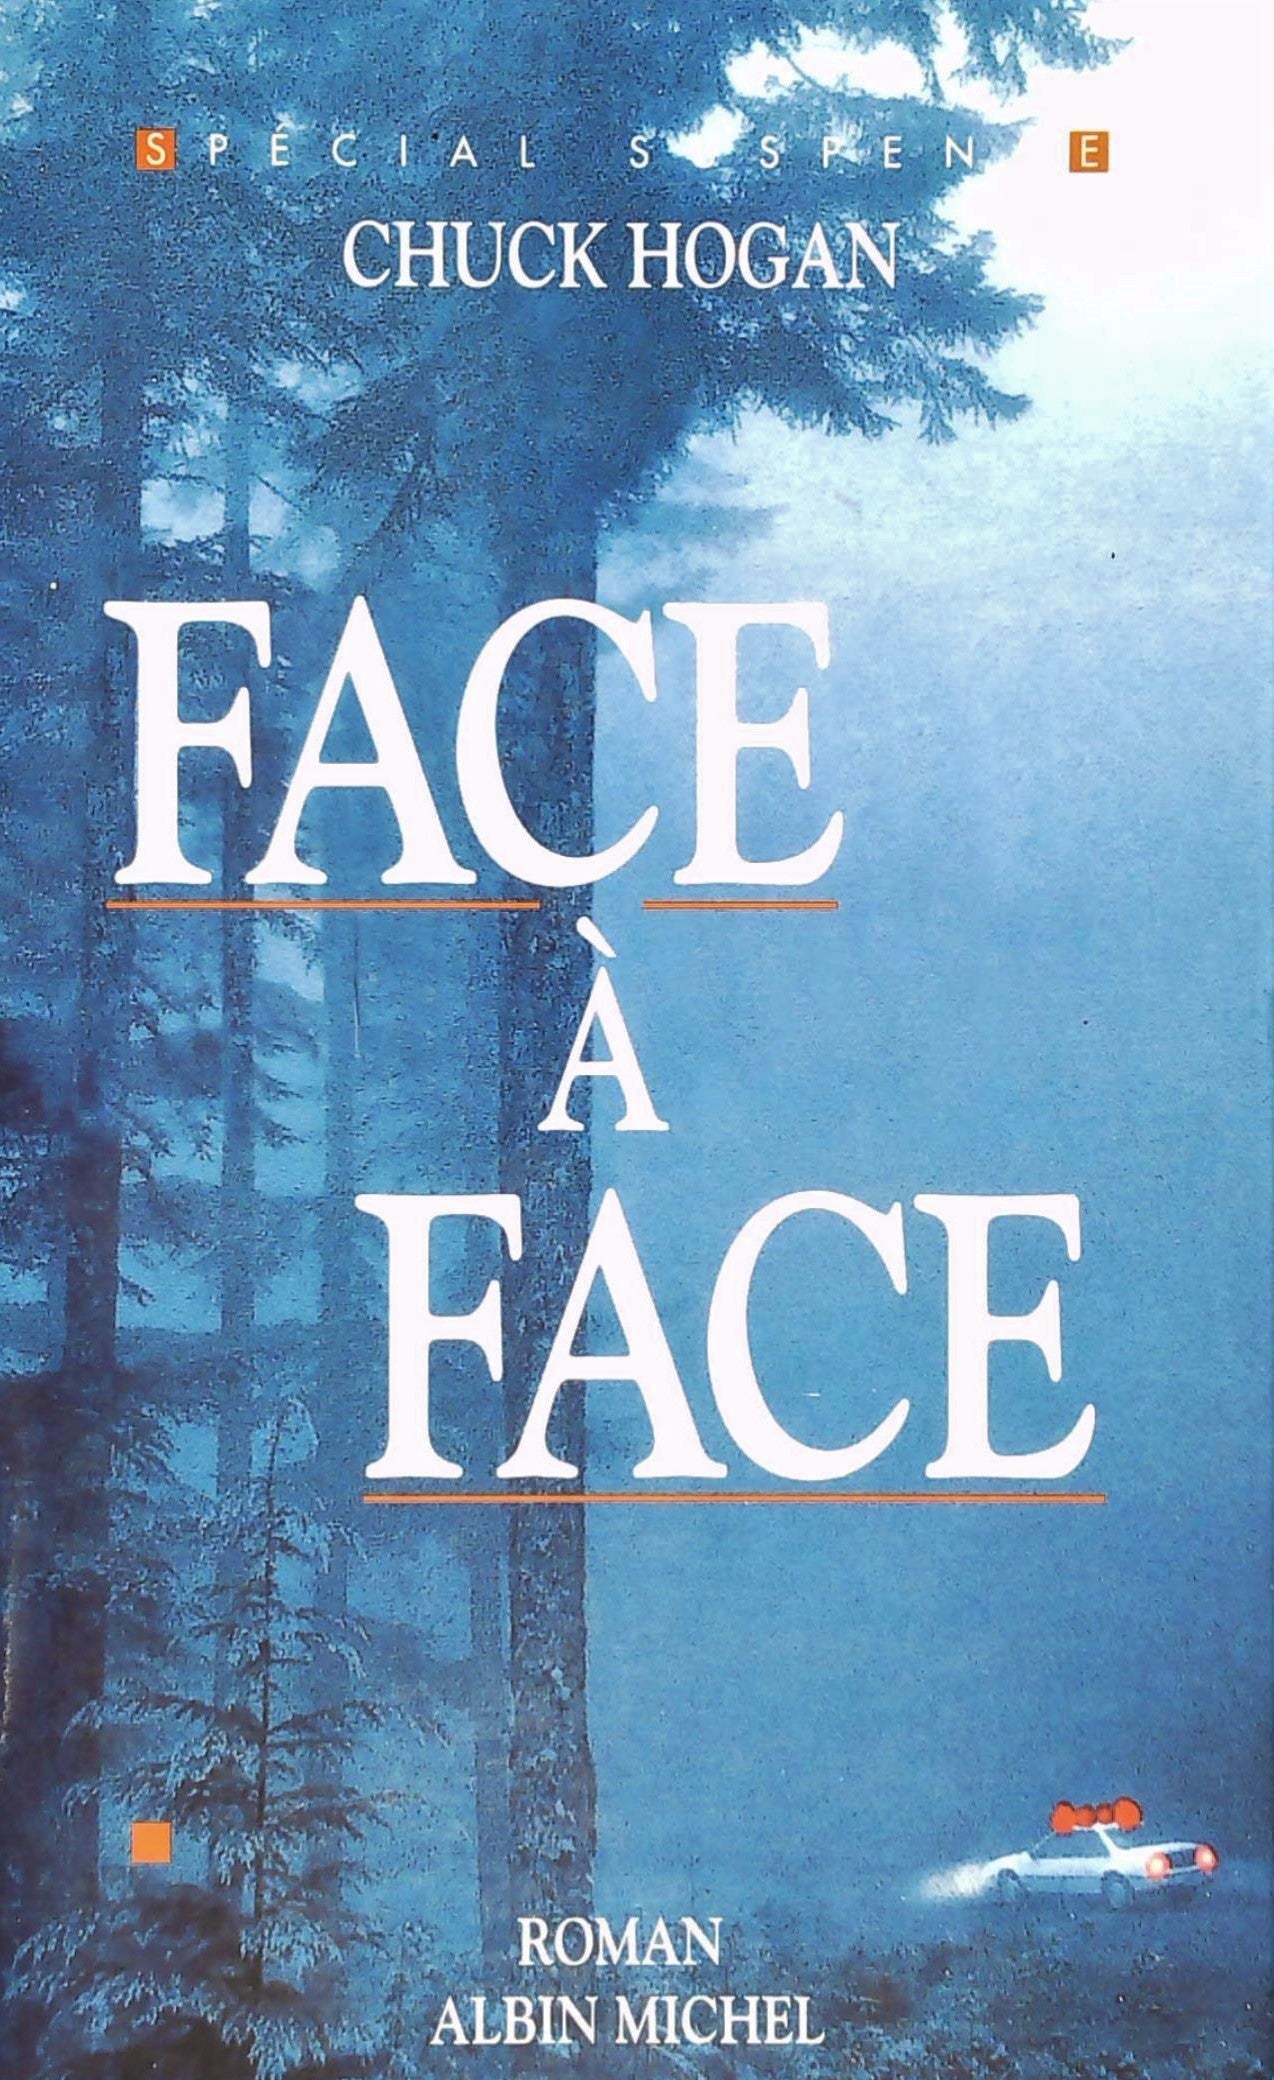 Livre ISBN 222608598X Face à face (Chuck Hogan)